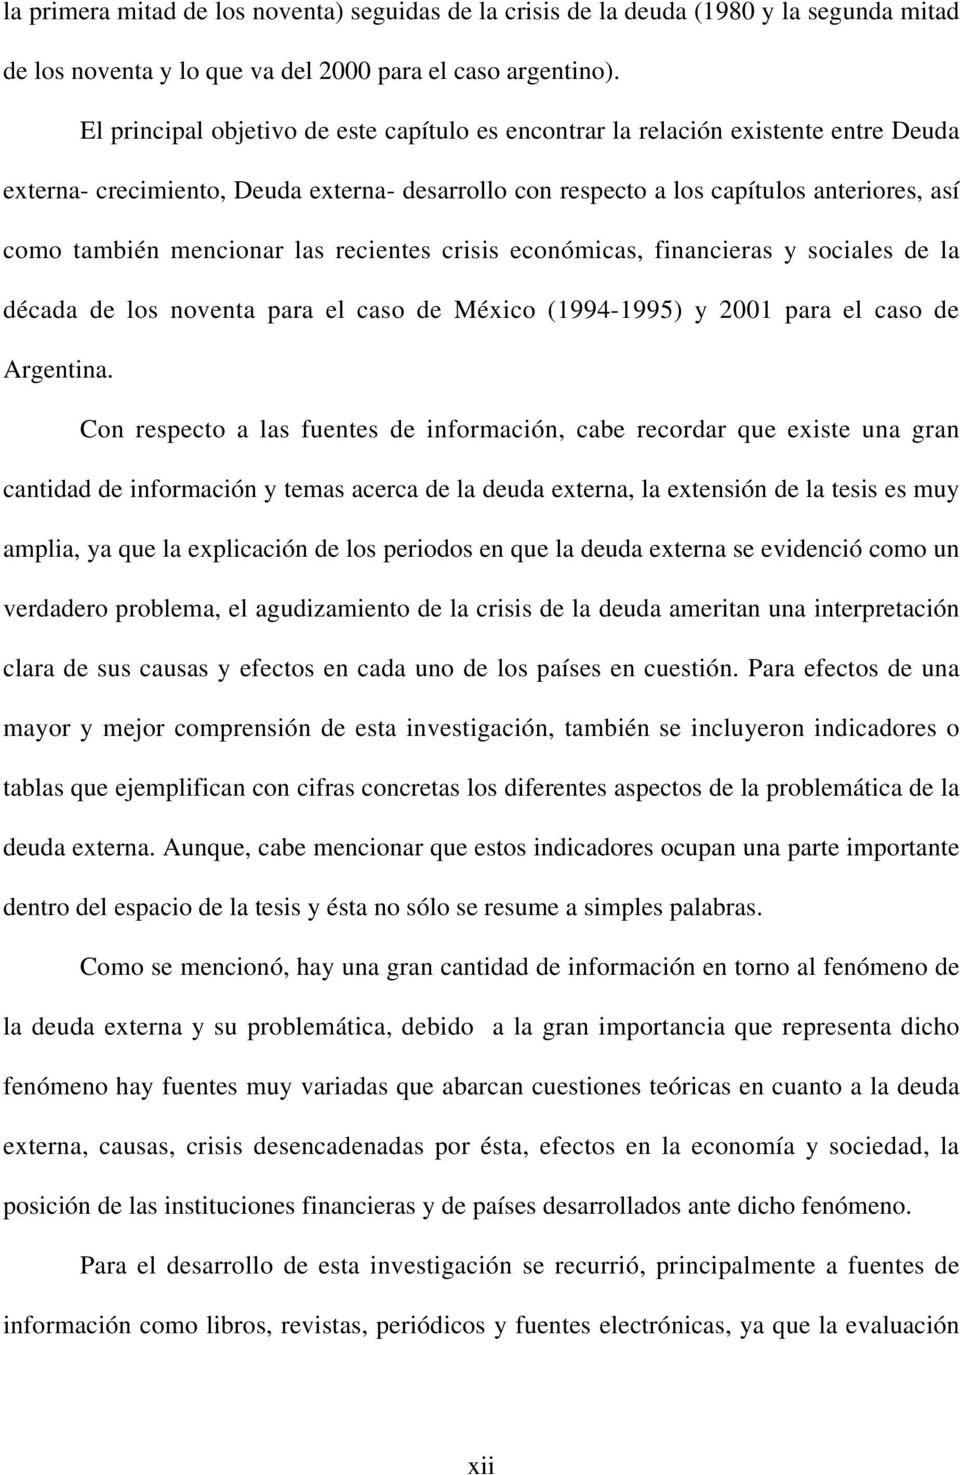 mencionar las recientes crisis económicas, financieras y sociales de la década de los noventa para el caso de México (1994-1995) y 2001 para el caso de Argentina.